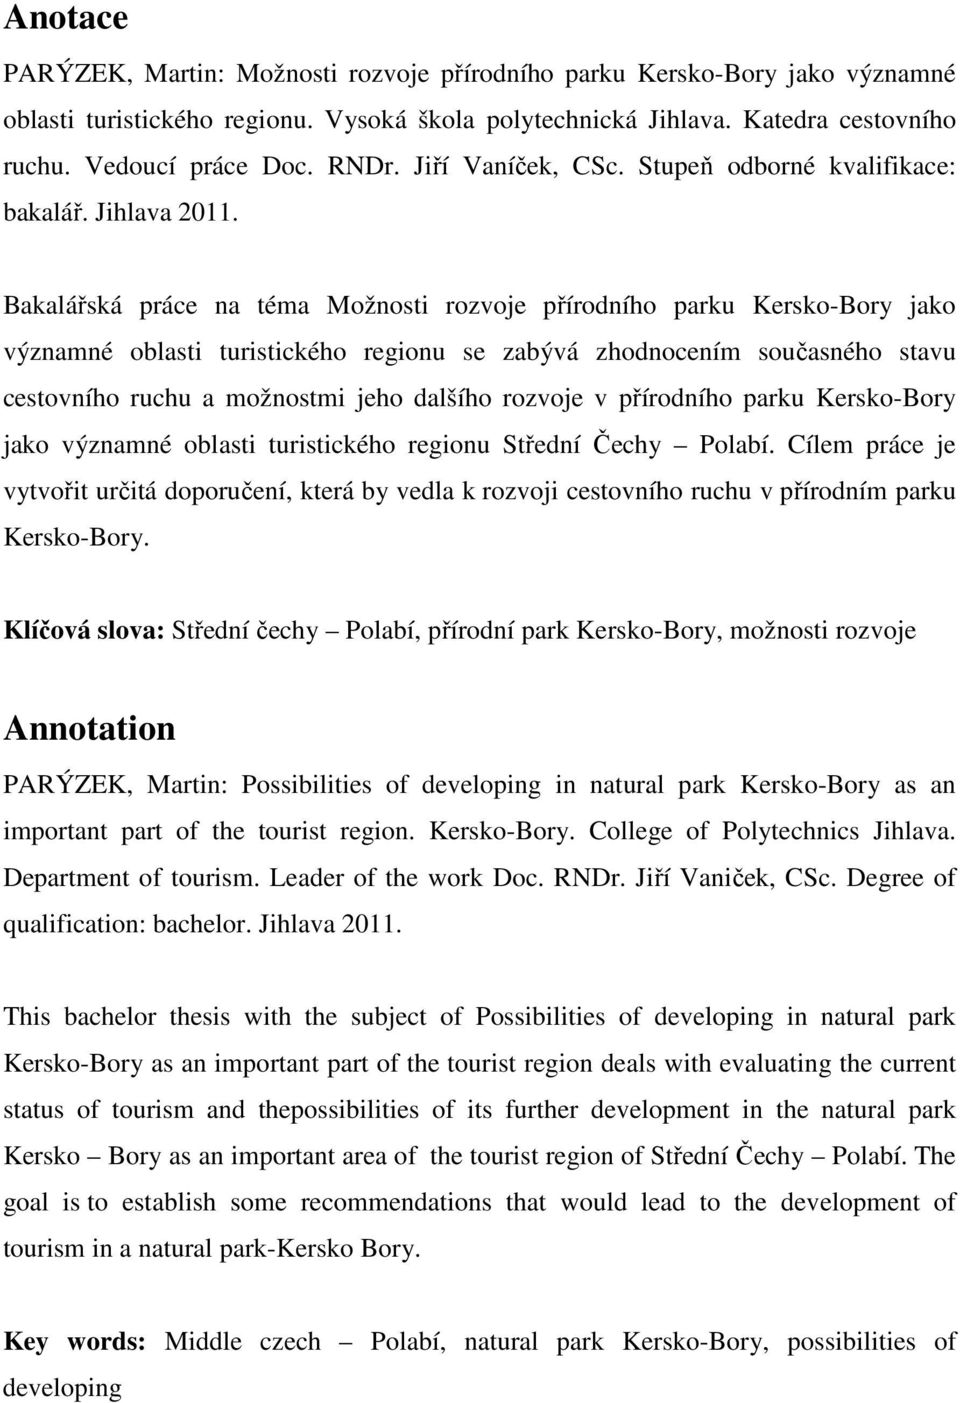 Bakalářská práce na téma Možnosti rozvoje přírodního parku Kersko-Bory jako významné oblasti turistického regionu se zabývá zhodnocením současného stavu cestovního ruchu a možnostmi jeho dalšího